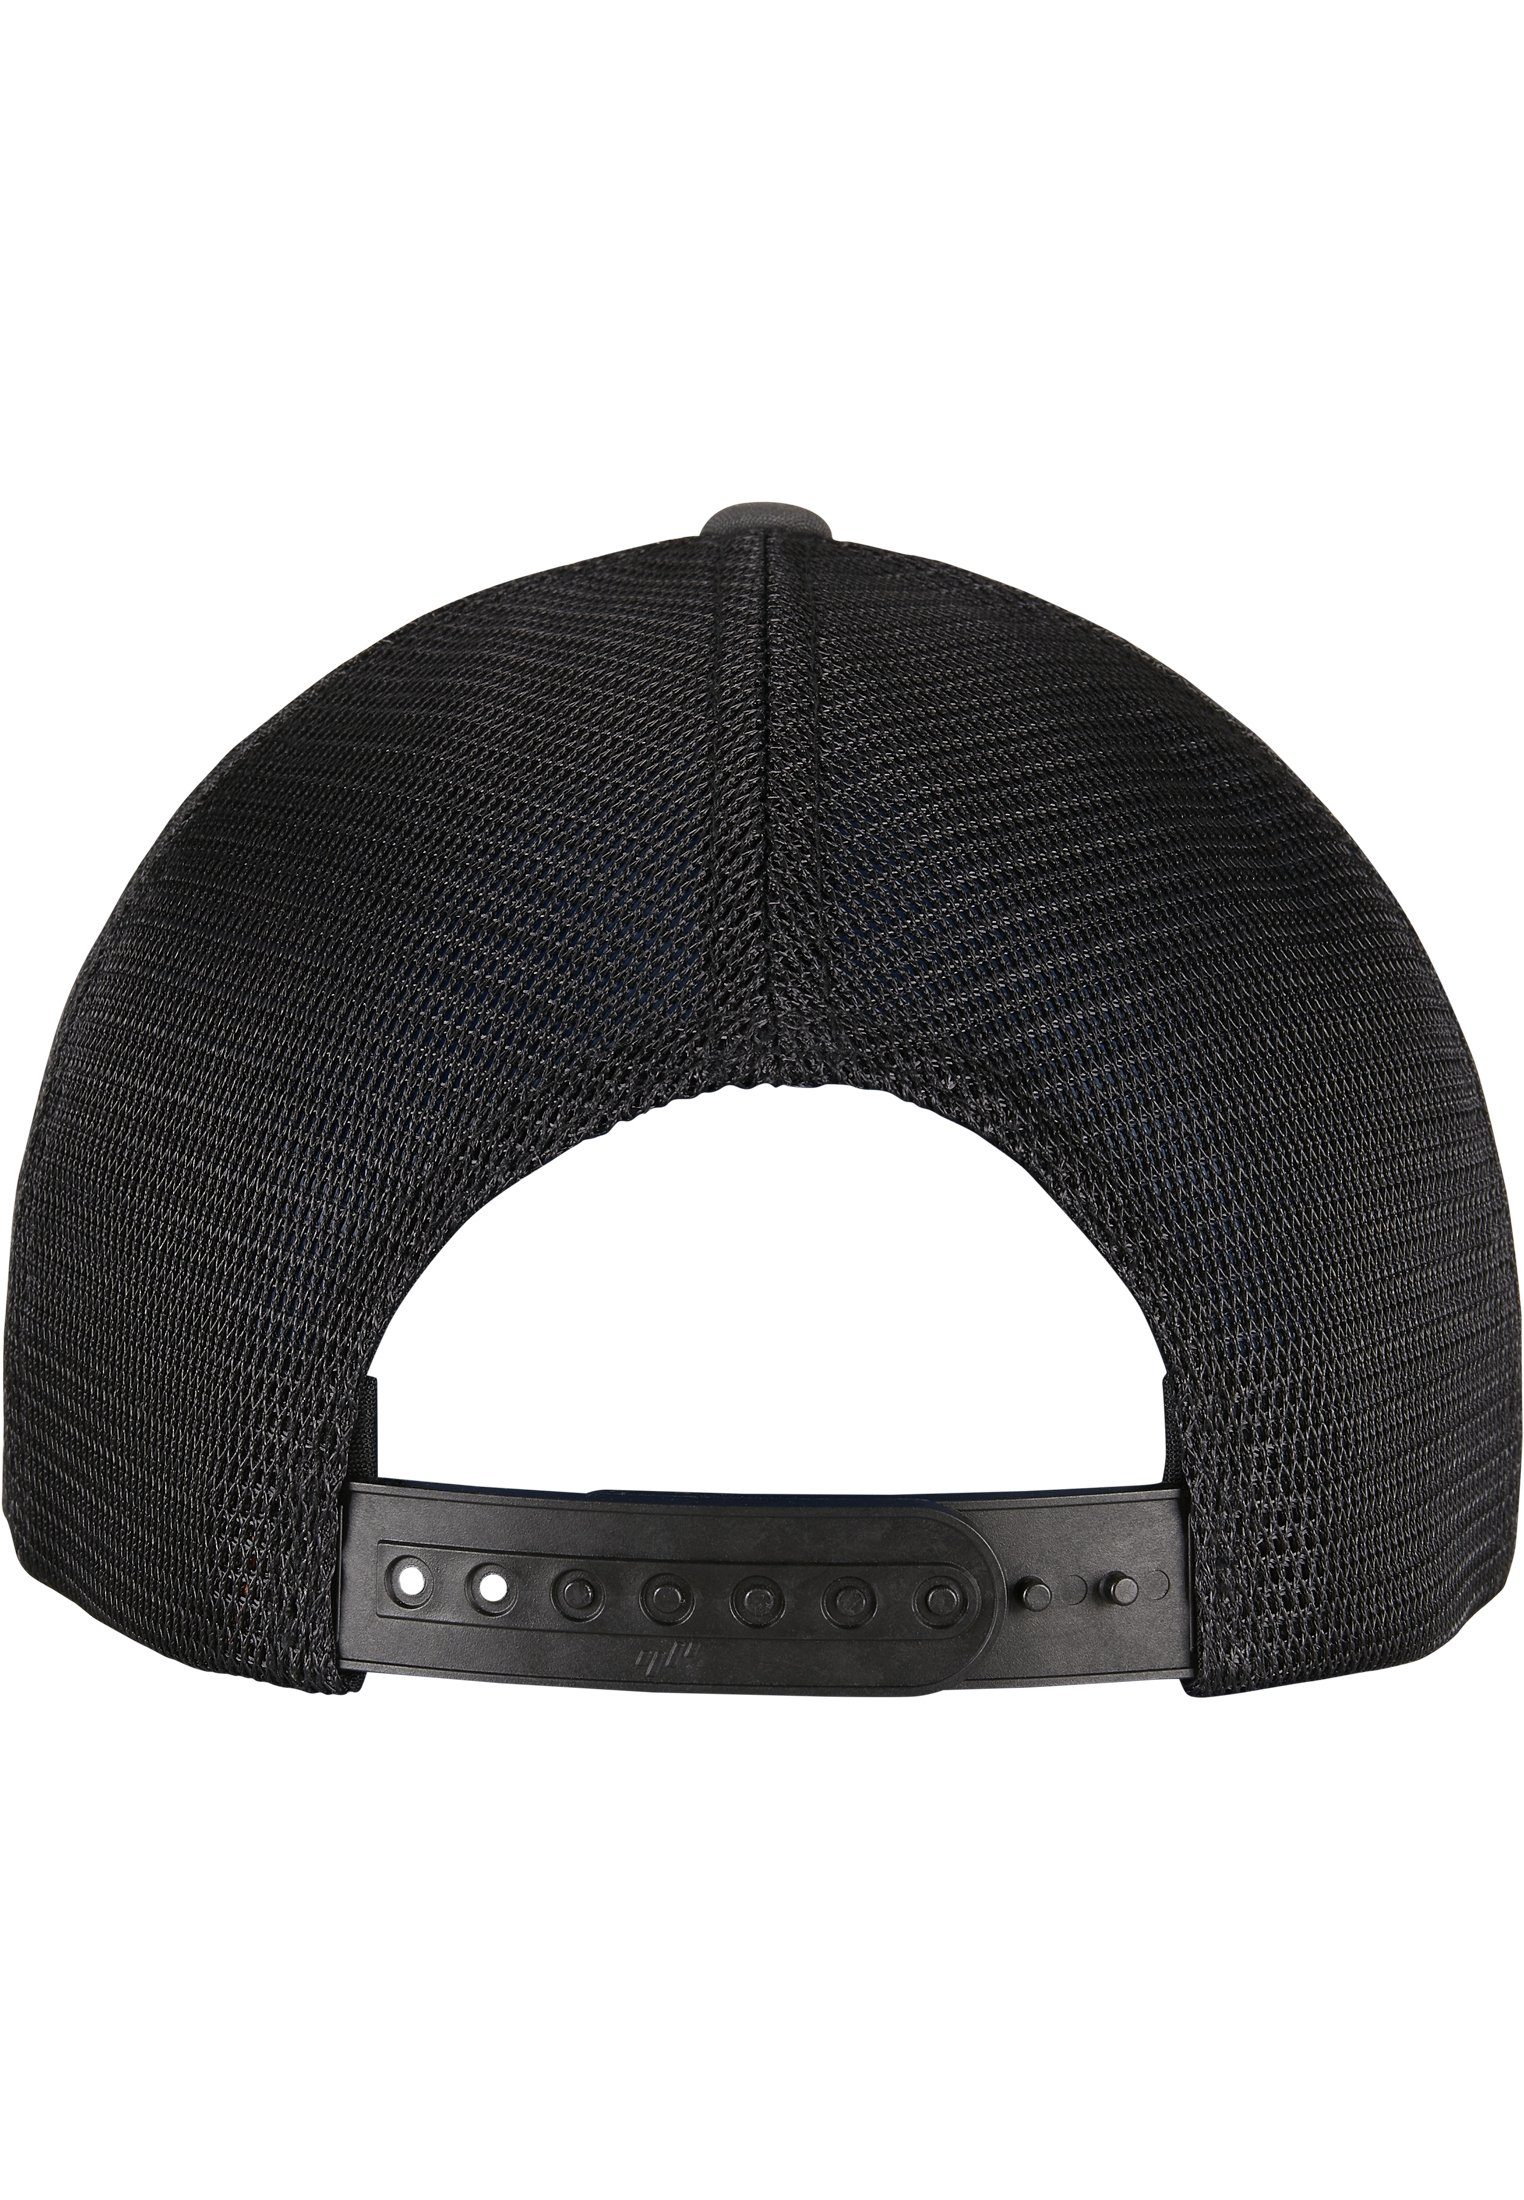 Cap Flexfit Cap 360° 2-Tone charcoal/black Omnimesh Flex Accessoires